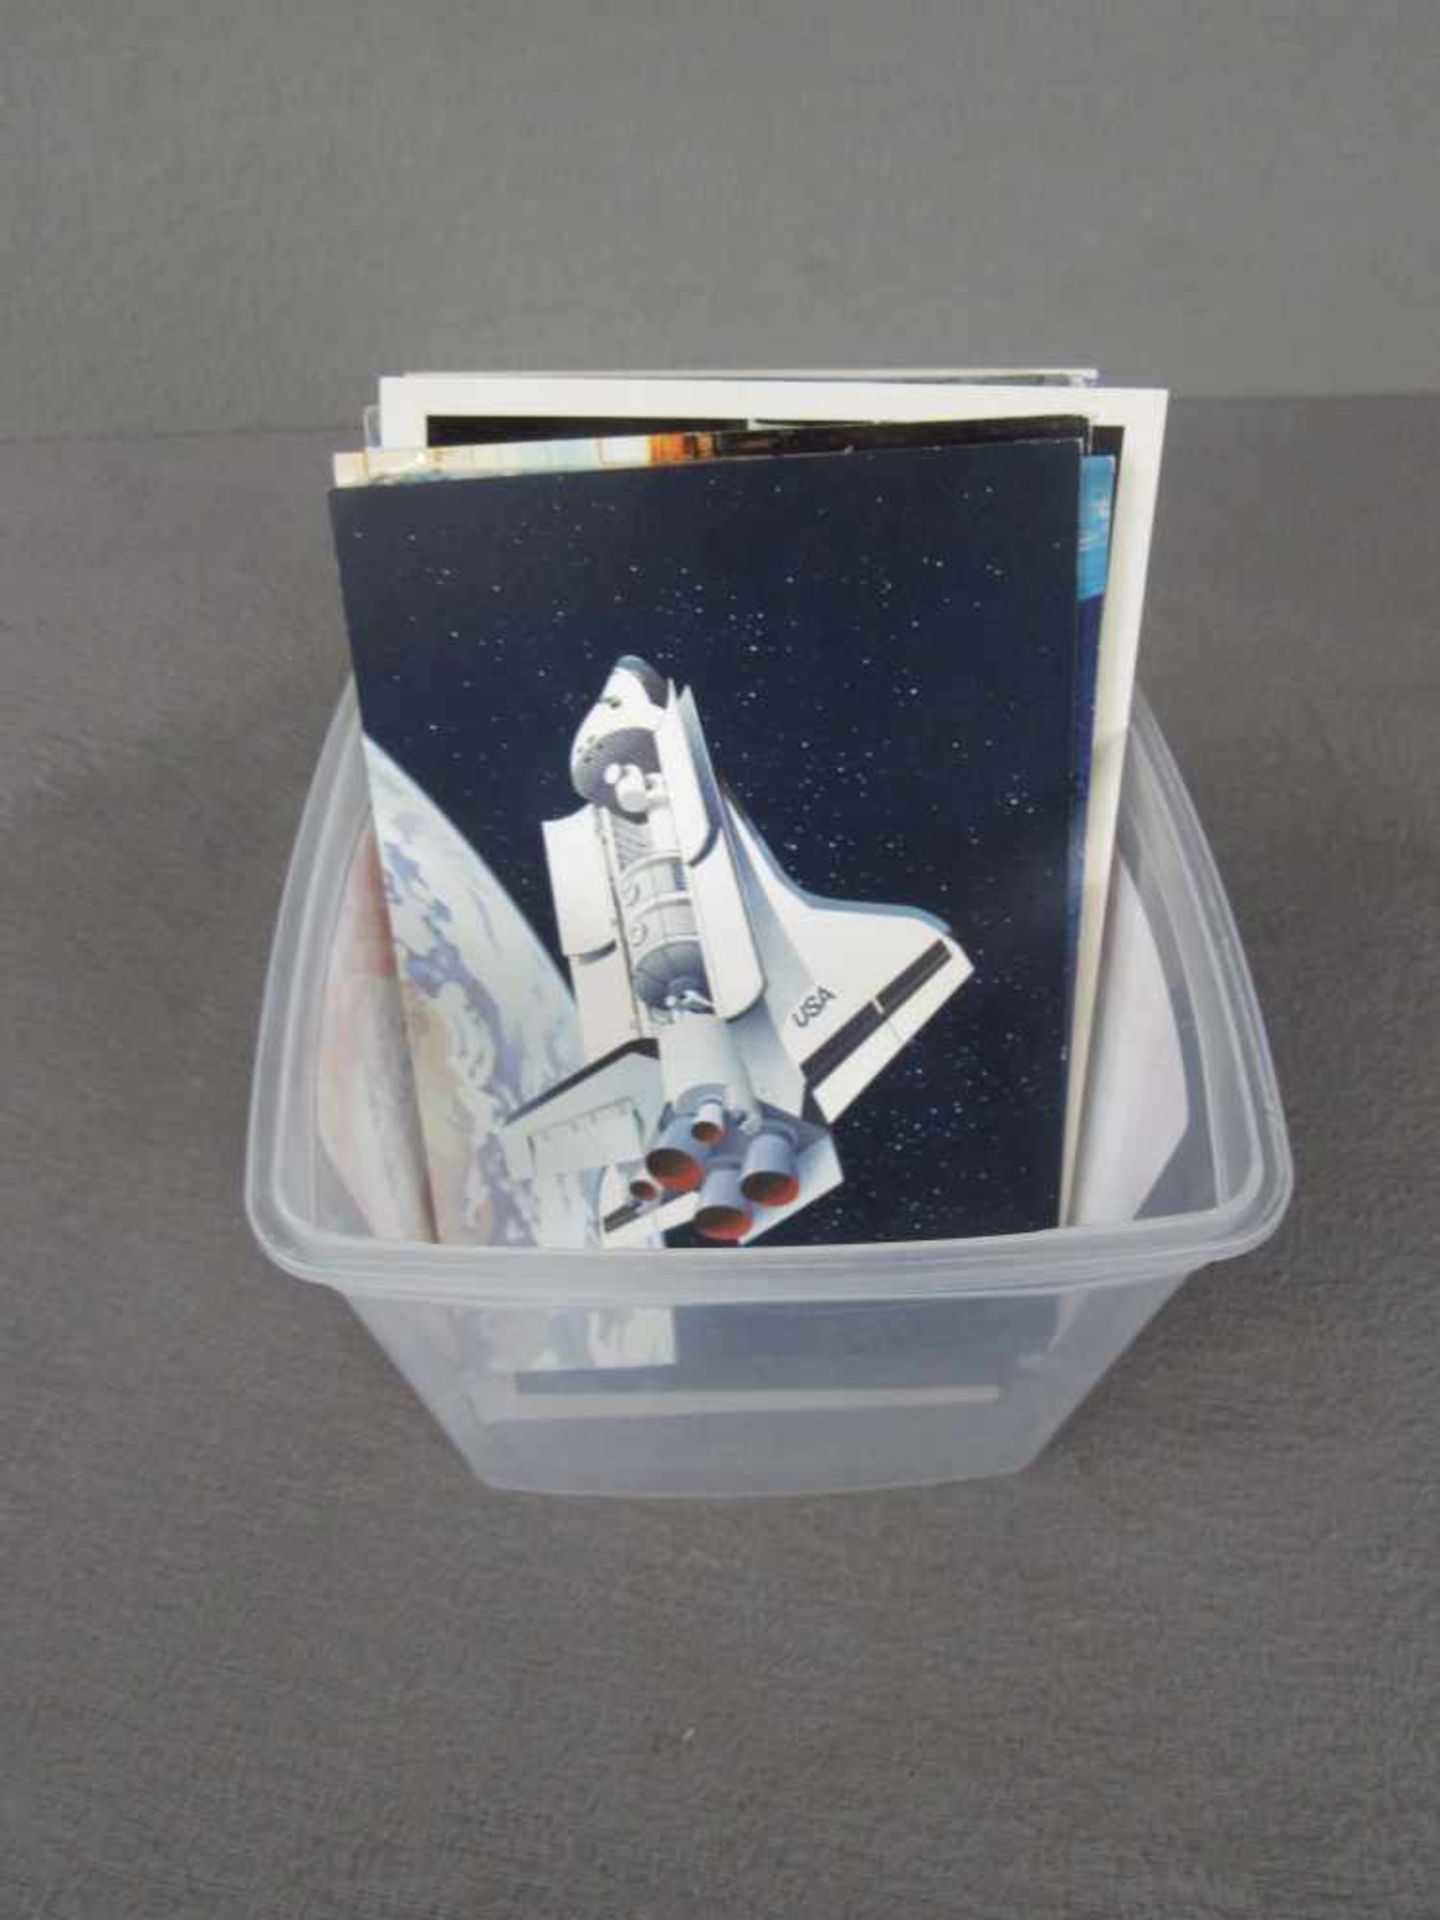 Kleine Box mit ca. 70 Postkarten mit Flugzeug und Raumfahrt Motiven